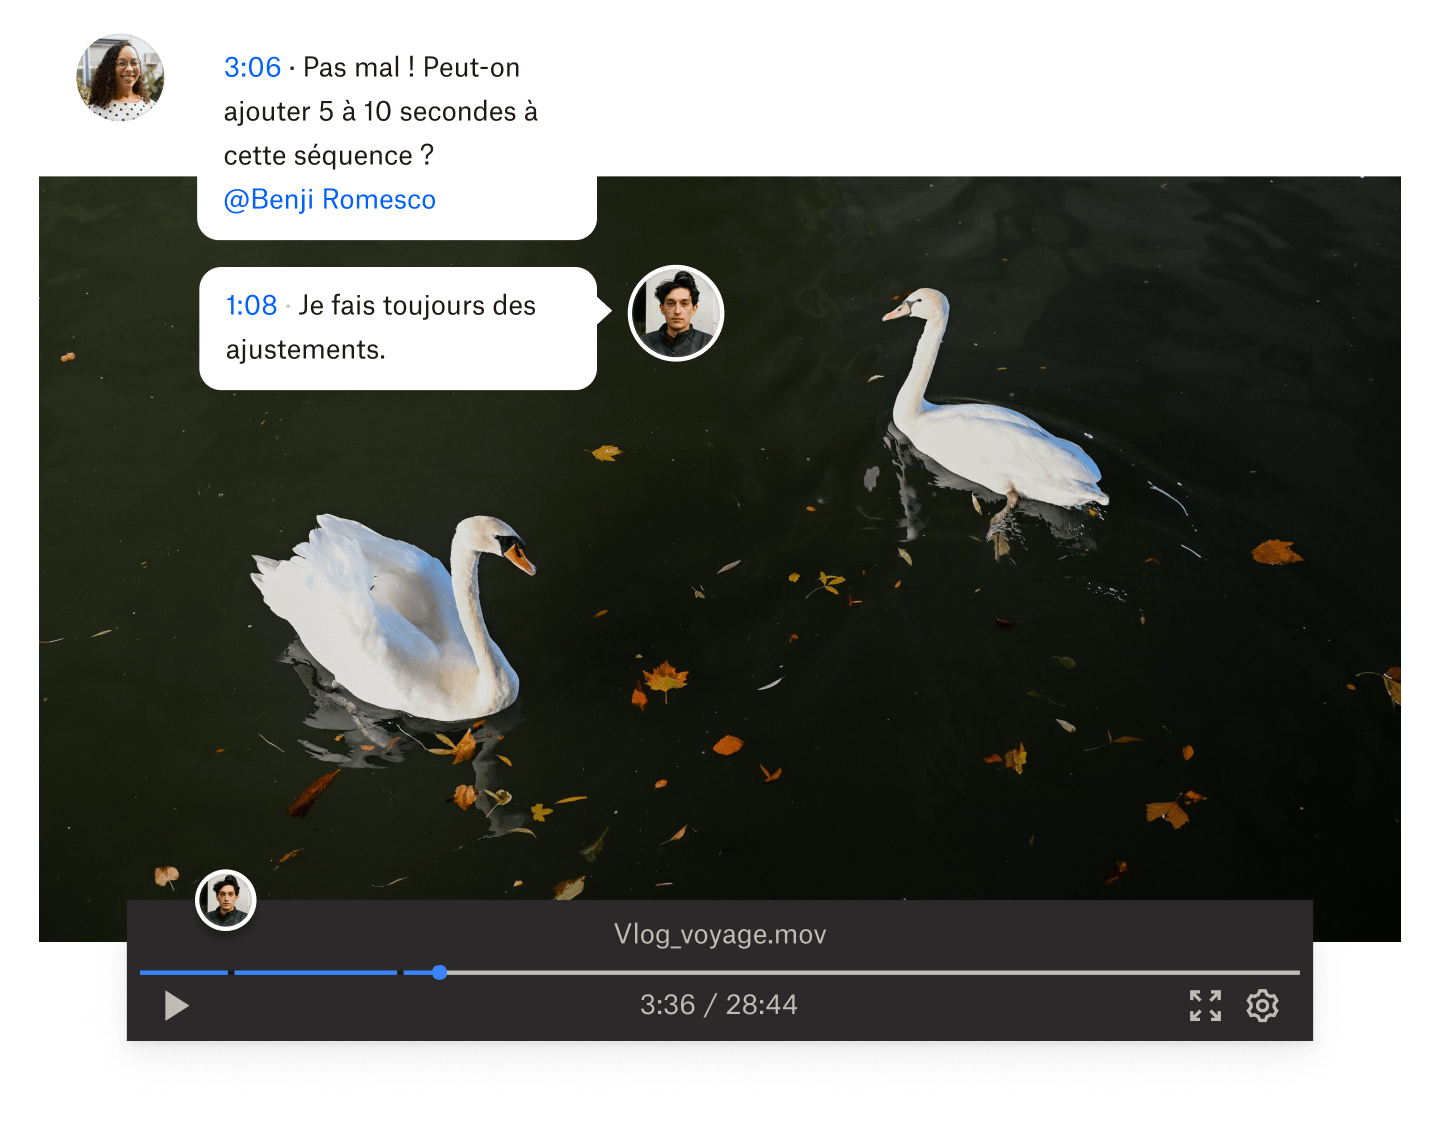 Image tirée d’une vidéo où deux cygnes nagent dans l’eau, avec des commentaires horodatés superposés à la vidéo